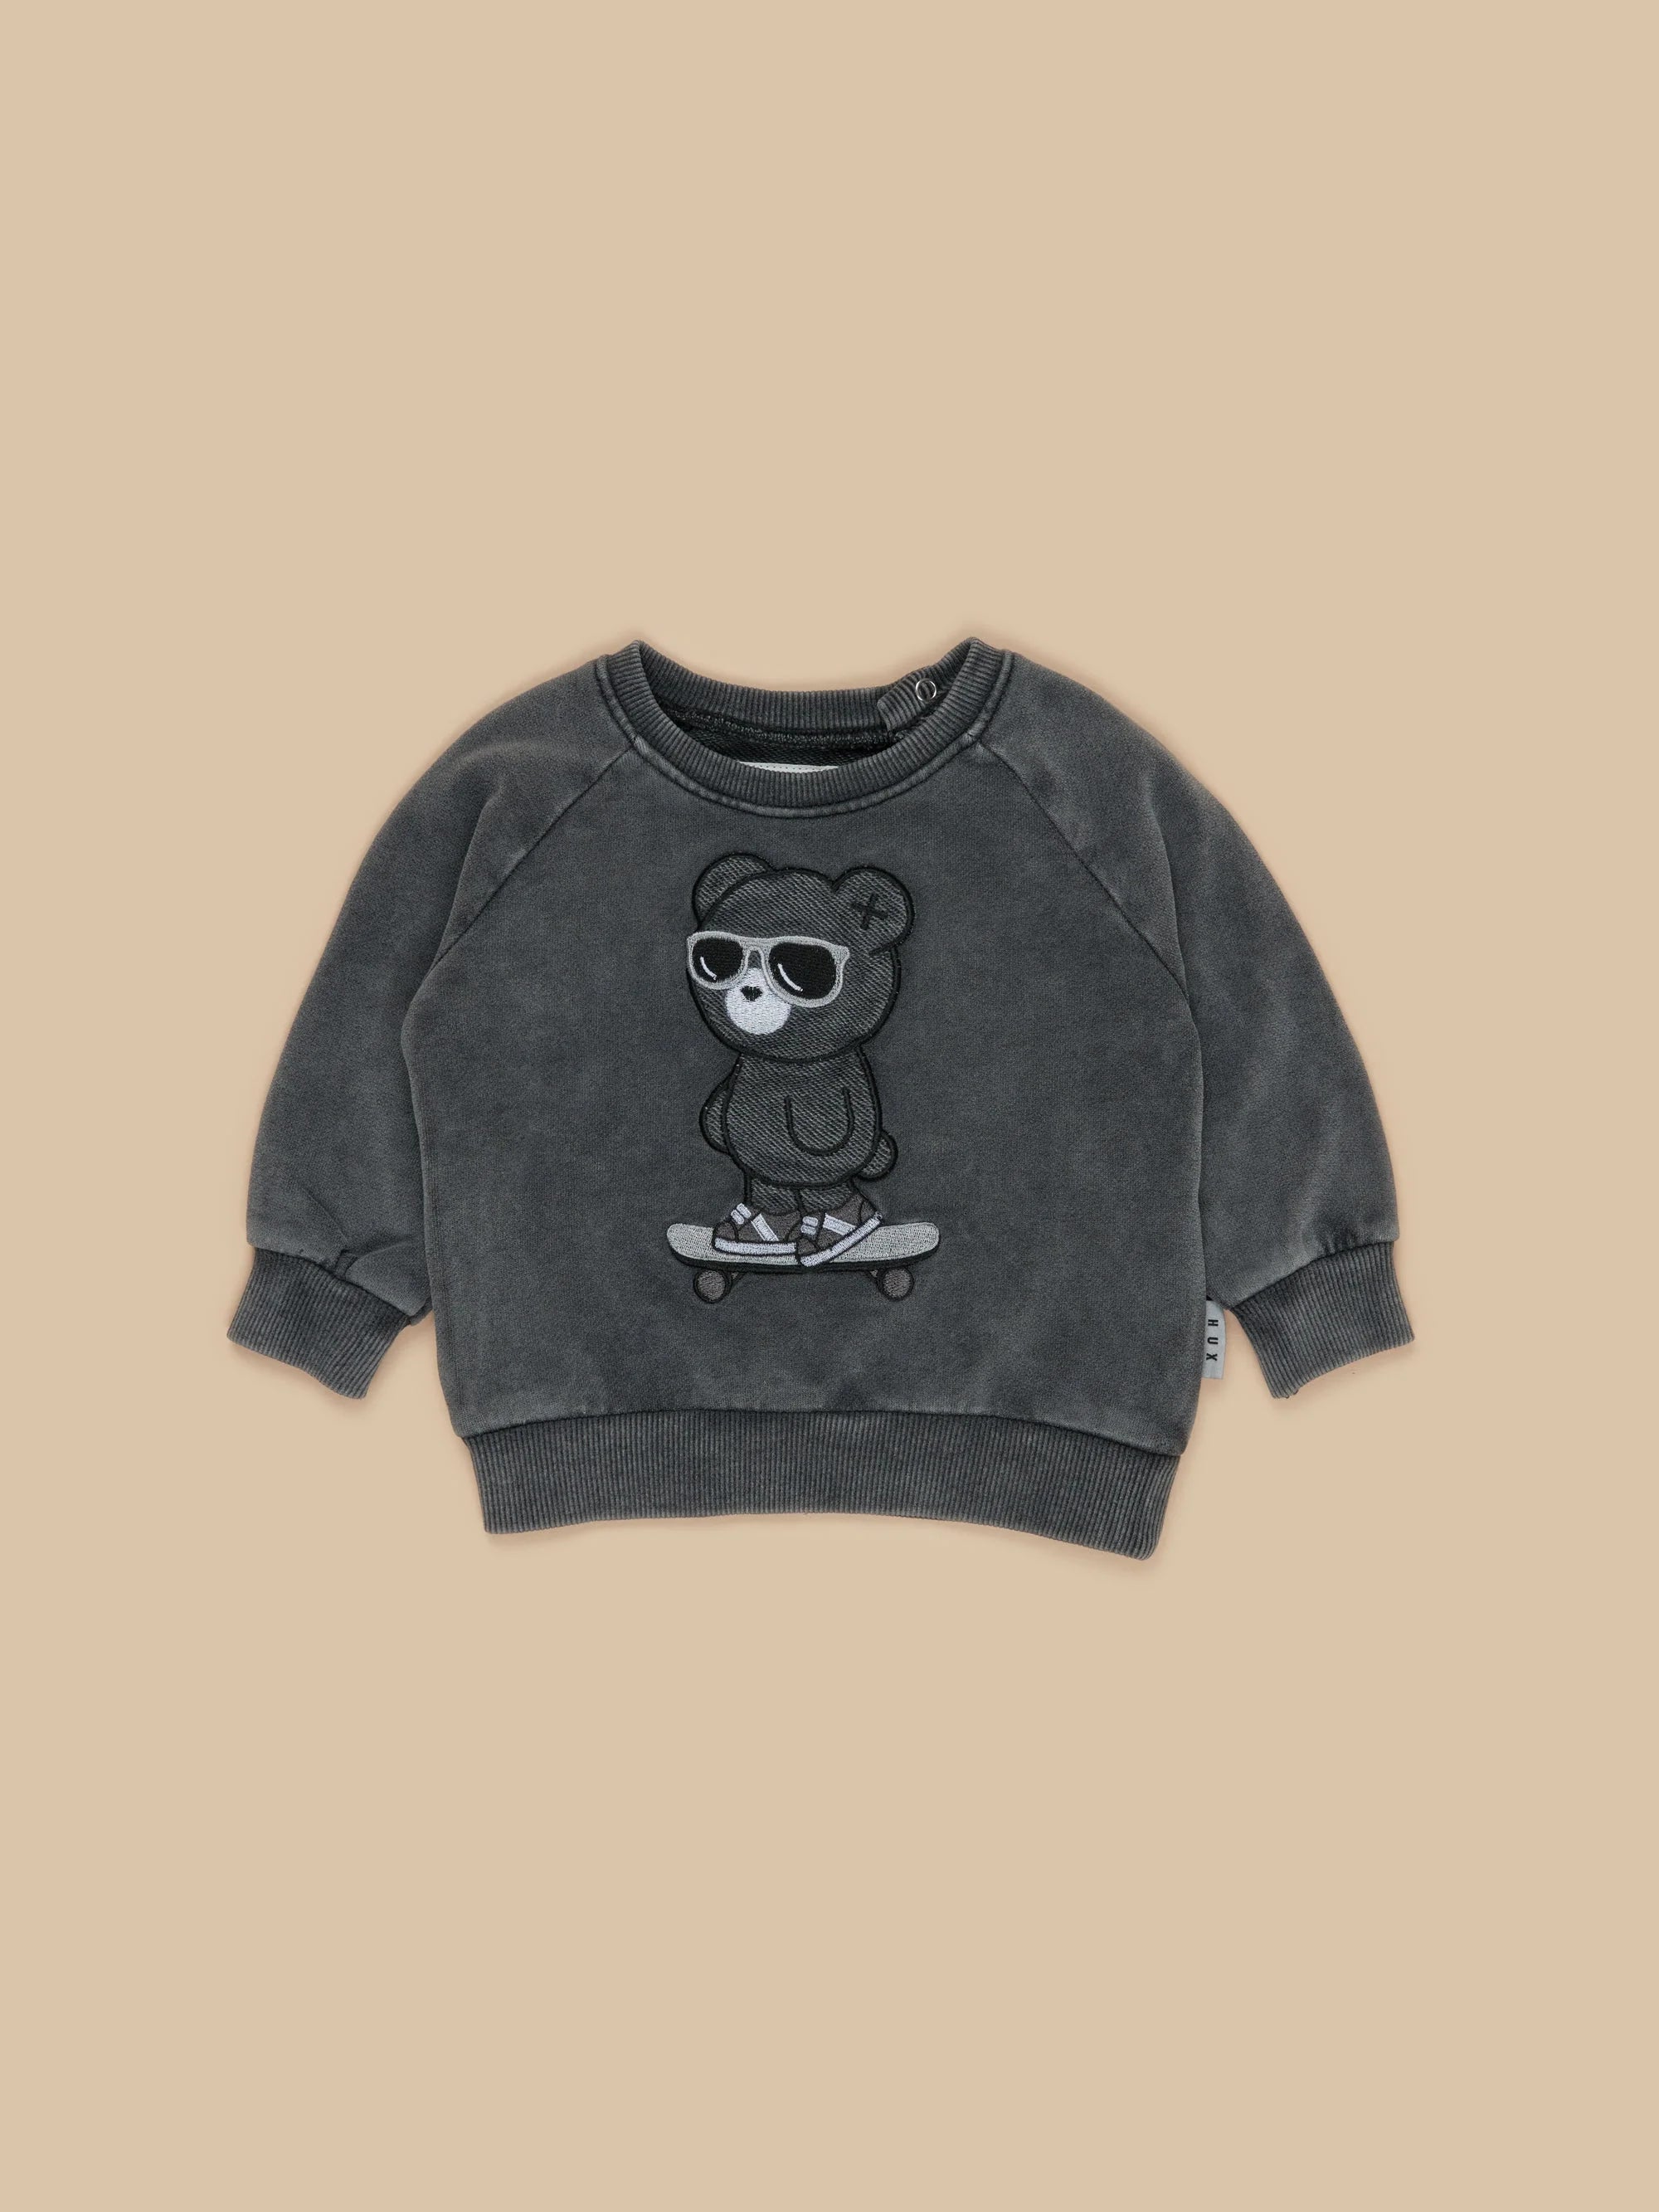 Skater Bear Sweatshirt - Vintage Black - Twinkle Twinkle Little One